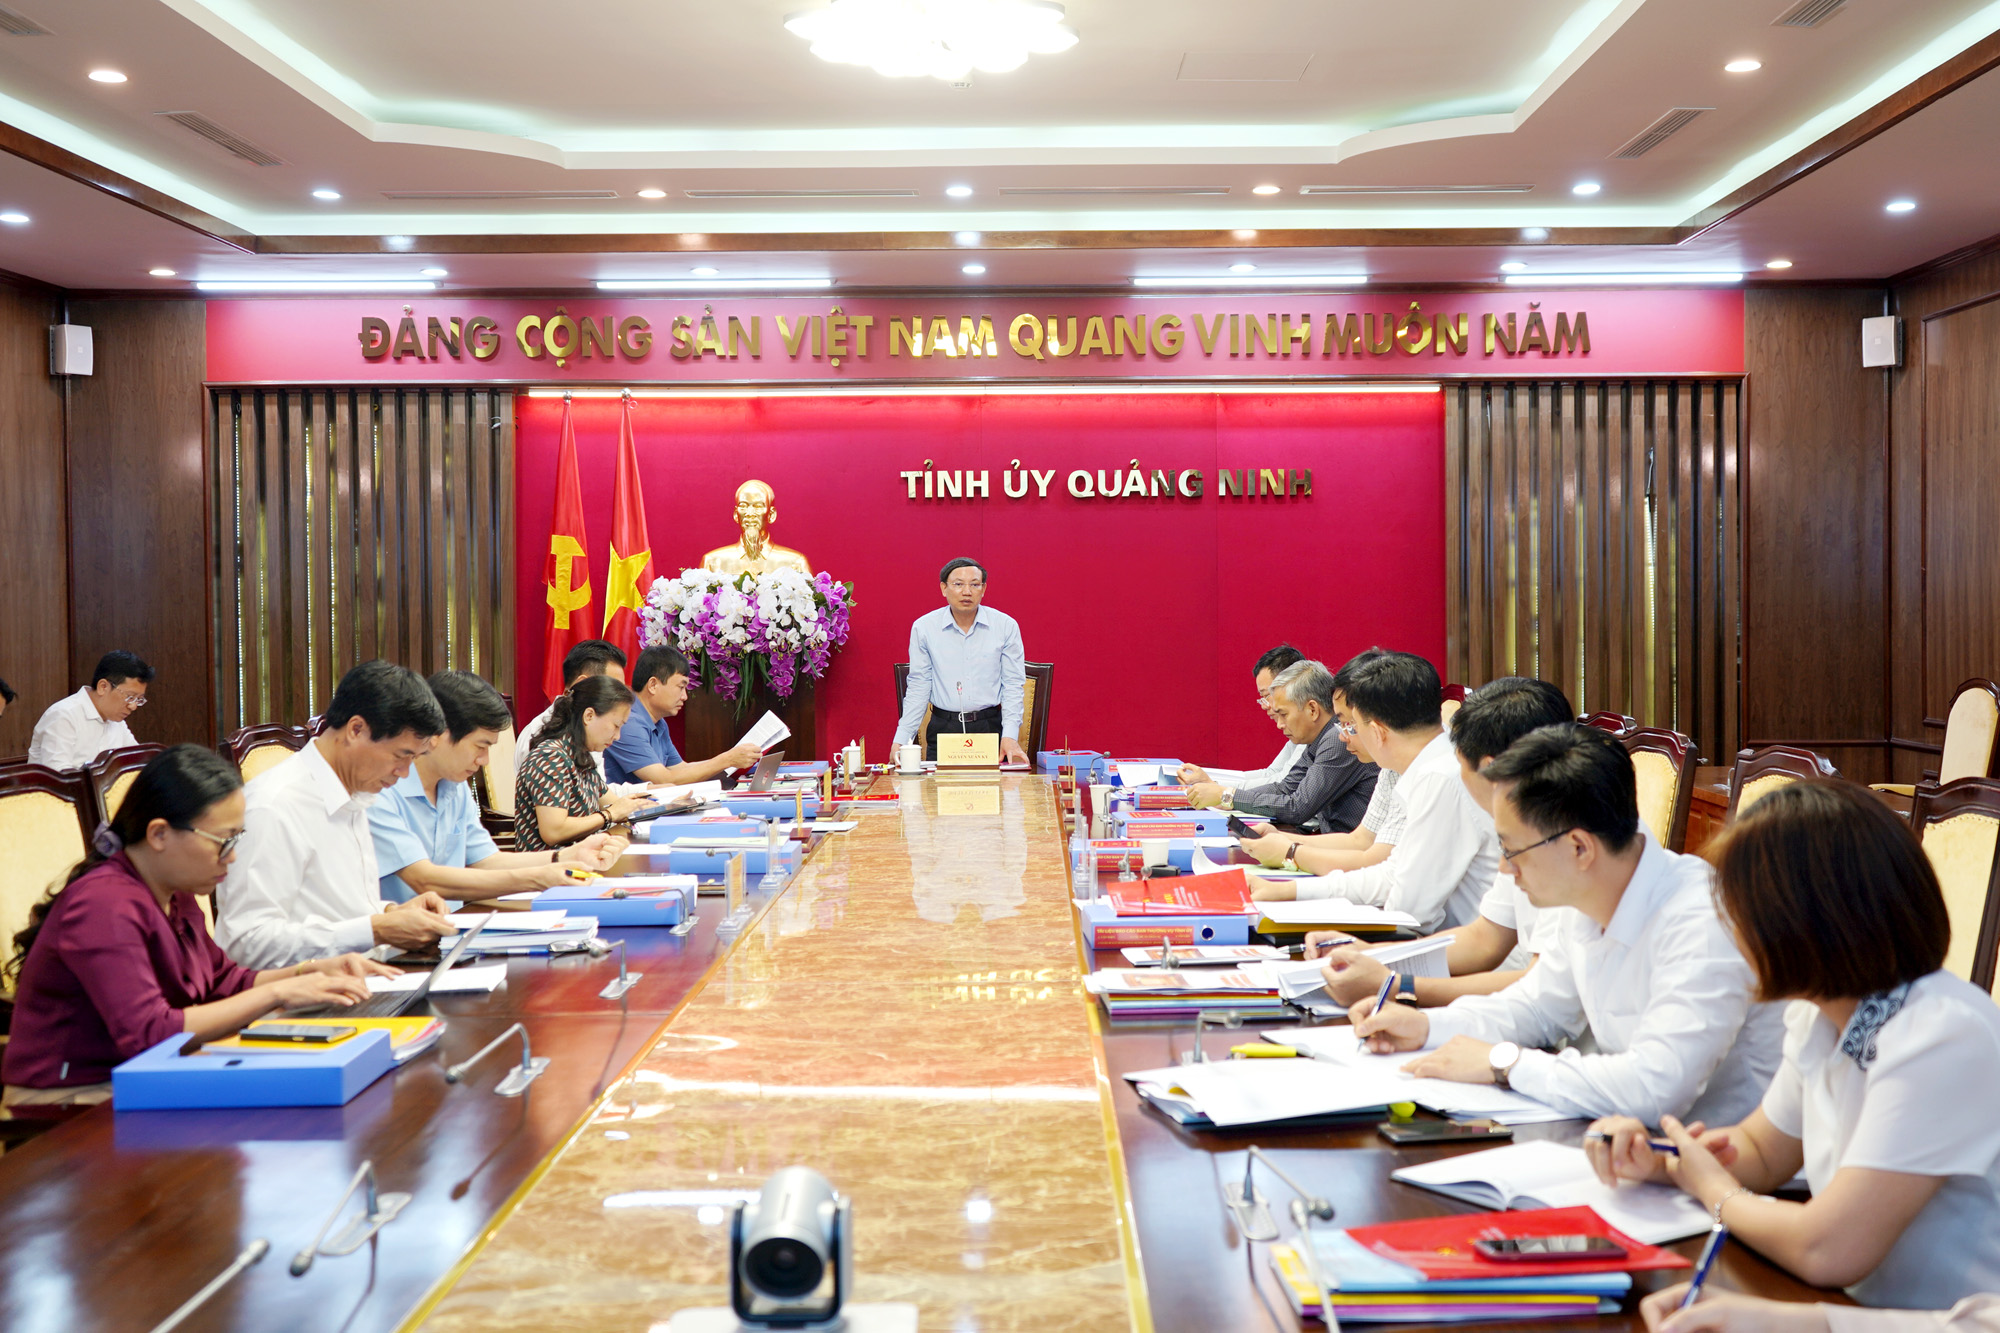 Đồng chí Nguyễn Xuân Ký, Bí thư Tỉnh ủy, Chủ tịch HĐND tỉnh, kết luận buổi làm việc.